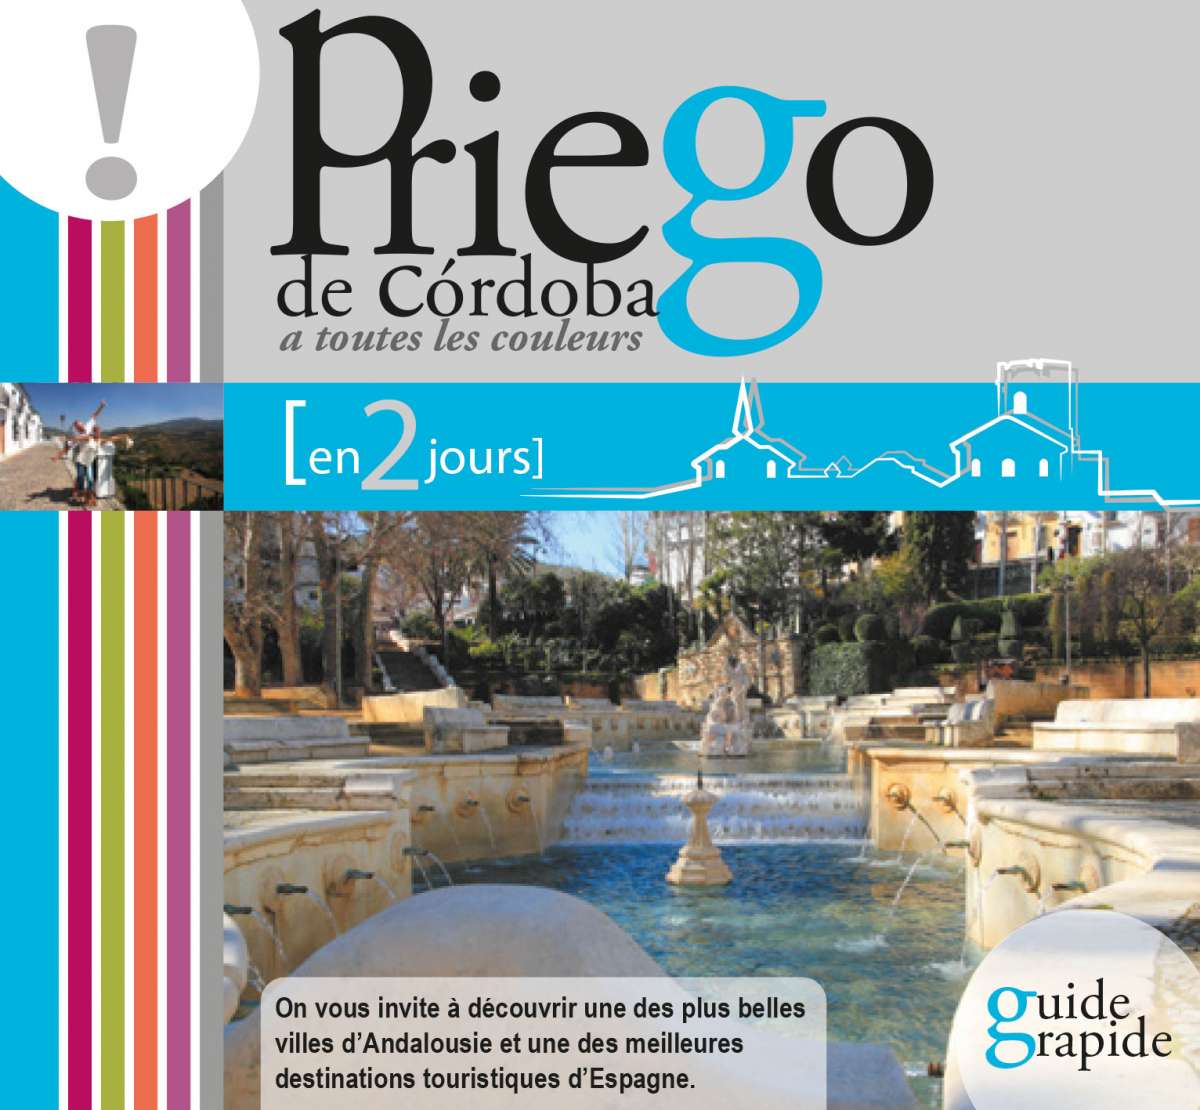 Guide Priego en deux jours (français)